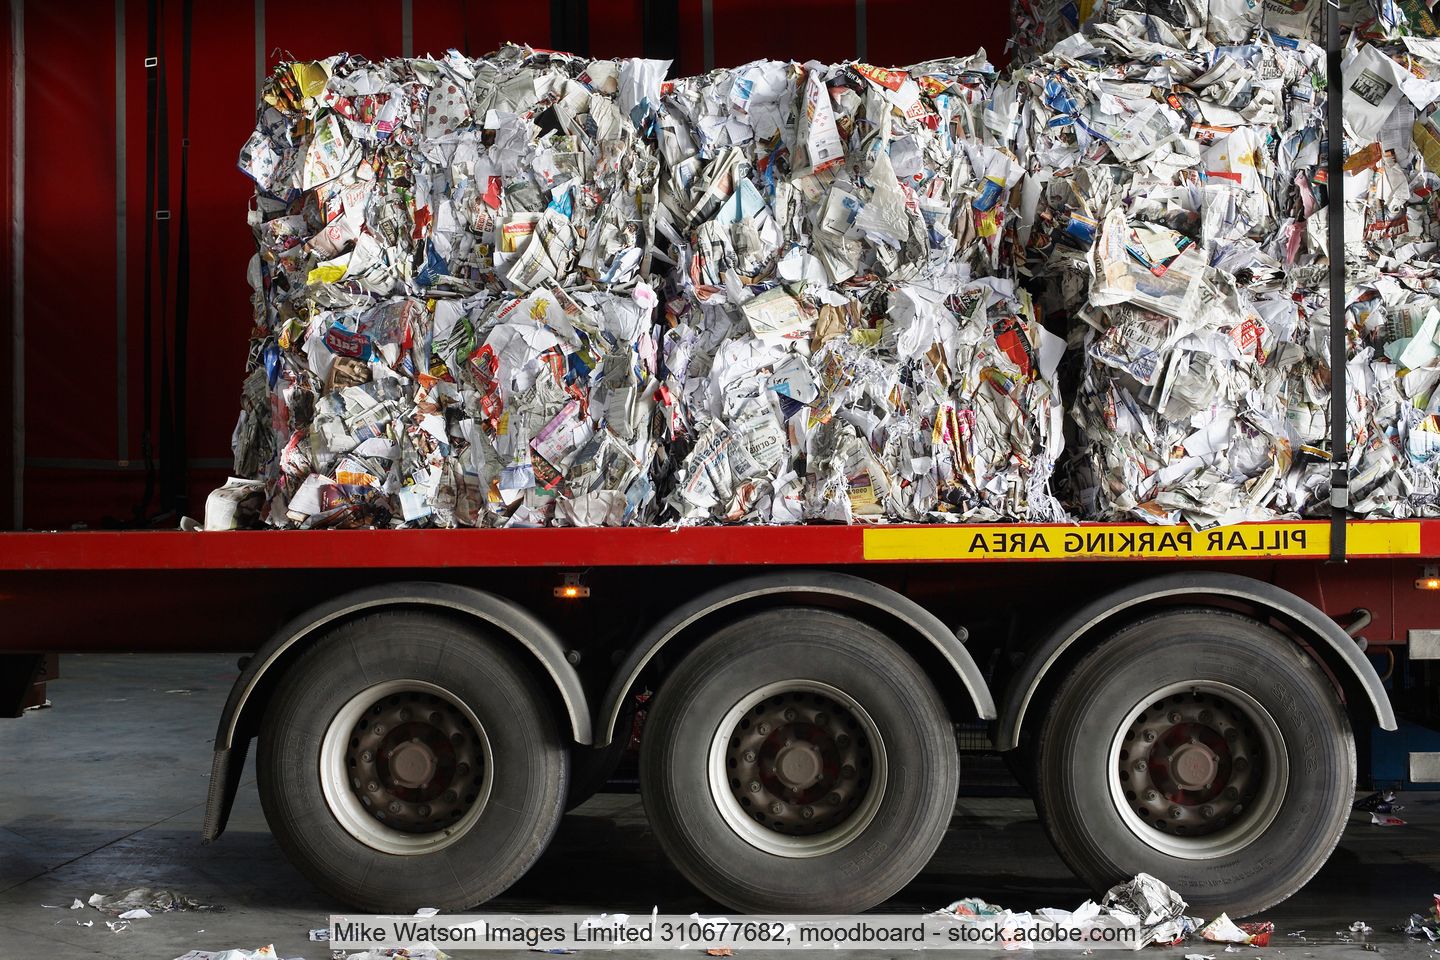 Verbände fordern bessere Regeln für eine zukünftige Abfallverbringung